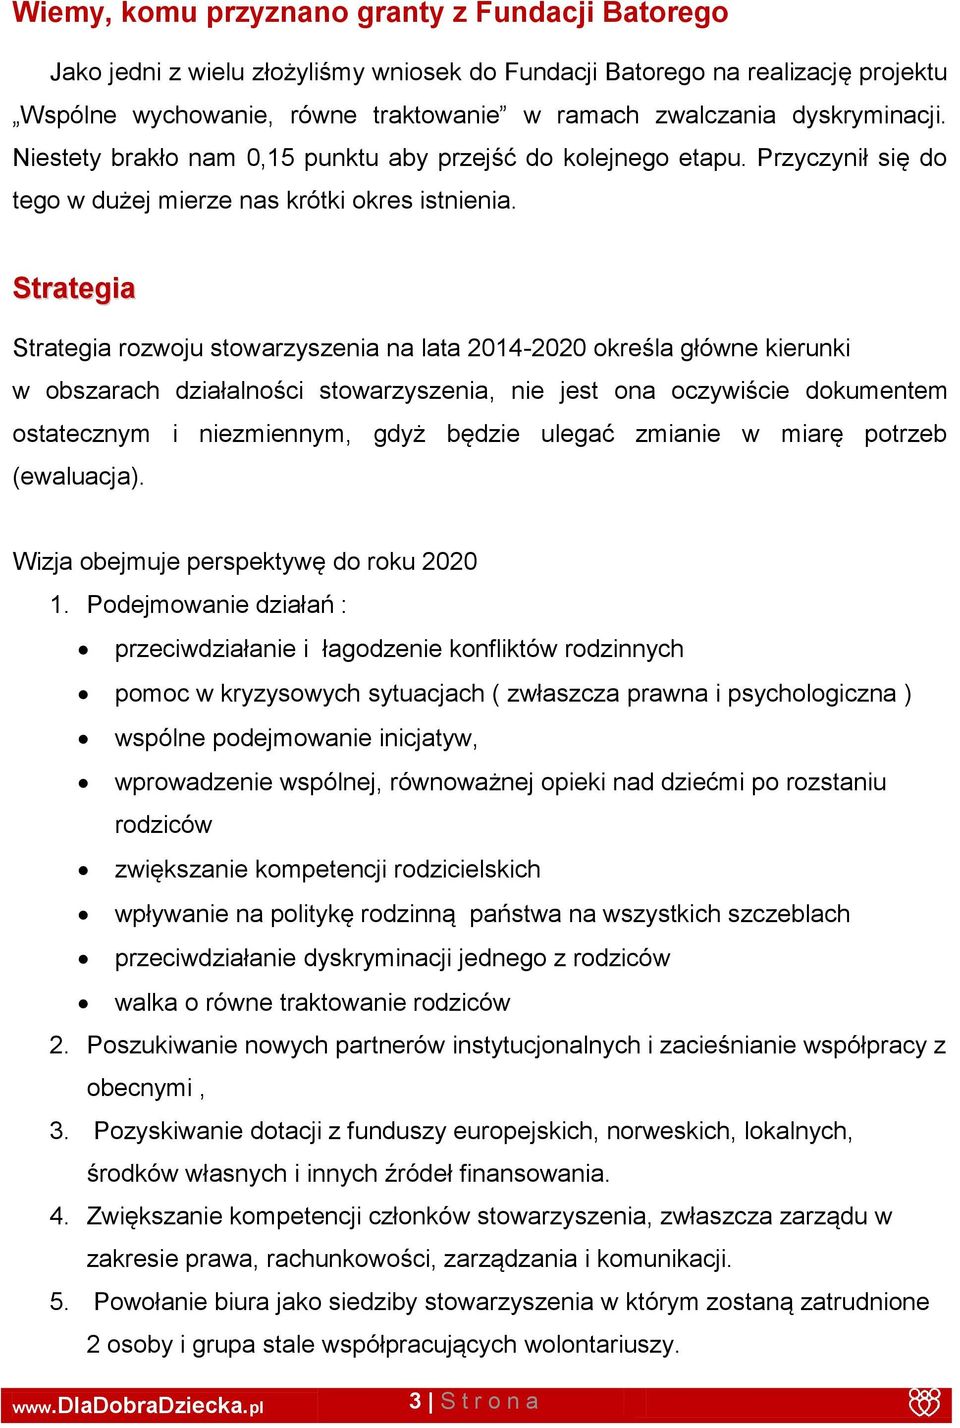 Strategia Strategia rozwoju stowarzyszenia na lata 2014-2020 określa główne kierunki w obszarach działalności stowarzyszenia, nie jest ona oczywiście dokumentem ostatecznym i niezmiennym, gdyż będzie